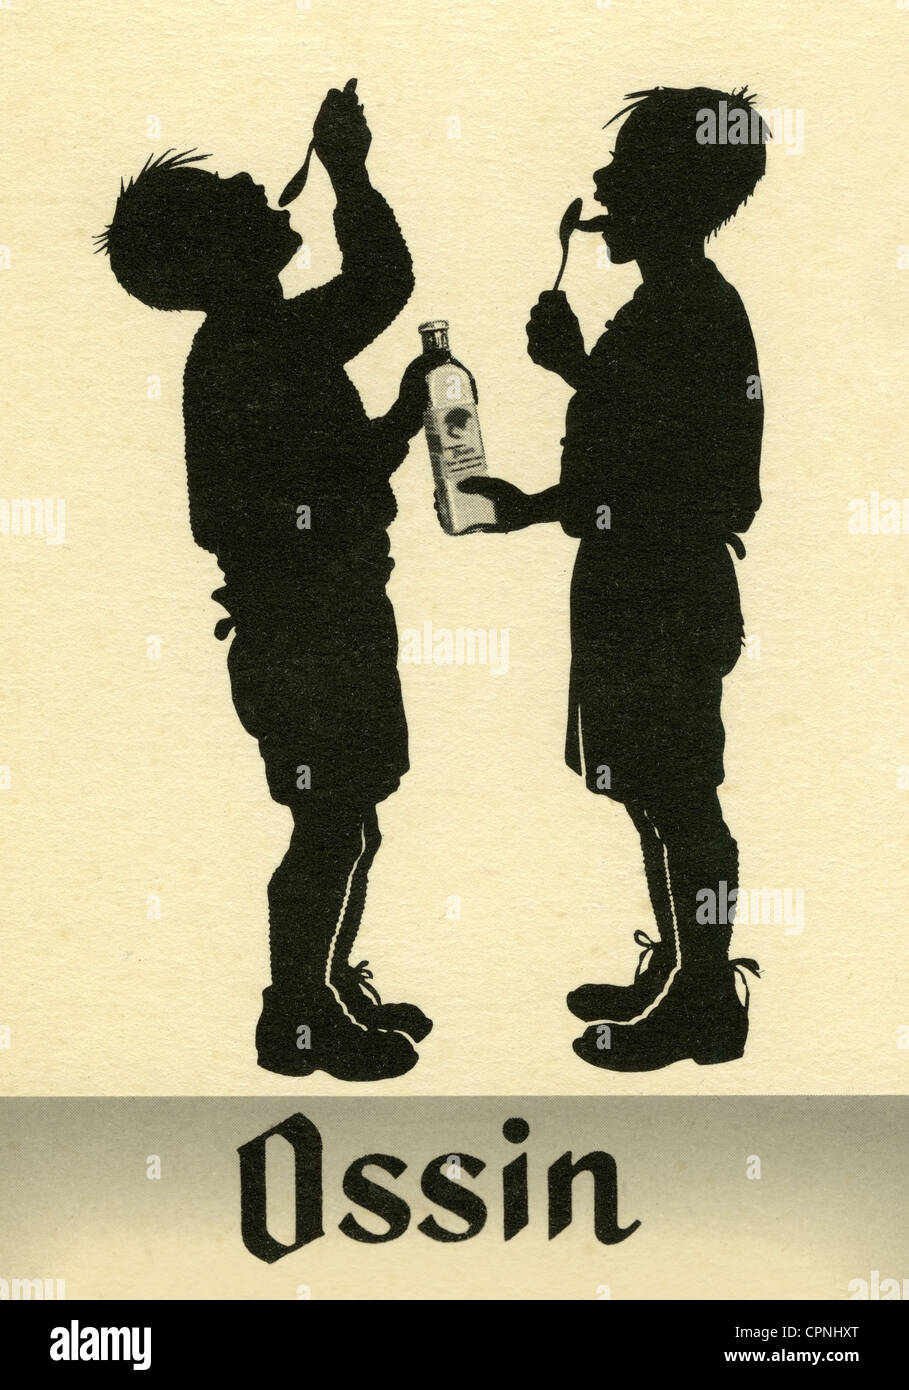 Pubblicità, cibo, olio di fegato di codrillo del marchio Ossin Eierlebertran emulsione, cartolina pubblicitaria, 1932, diritti aggiuntivi-clearences-non disponibile Foto Stock